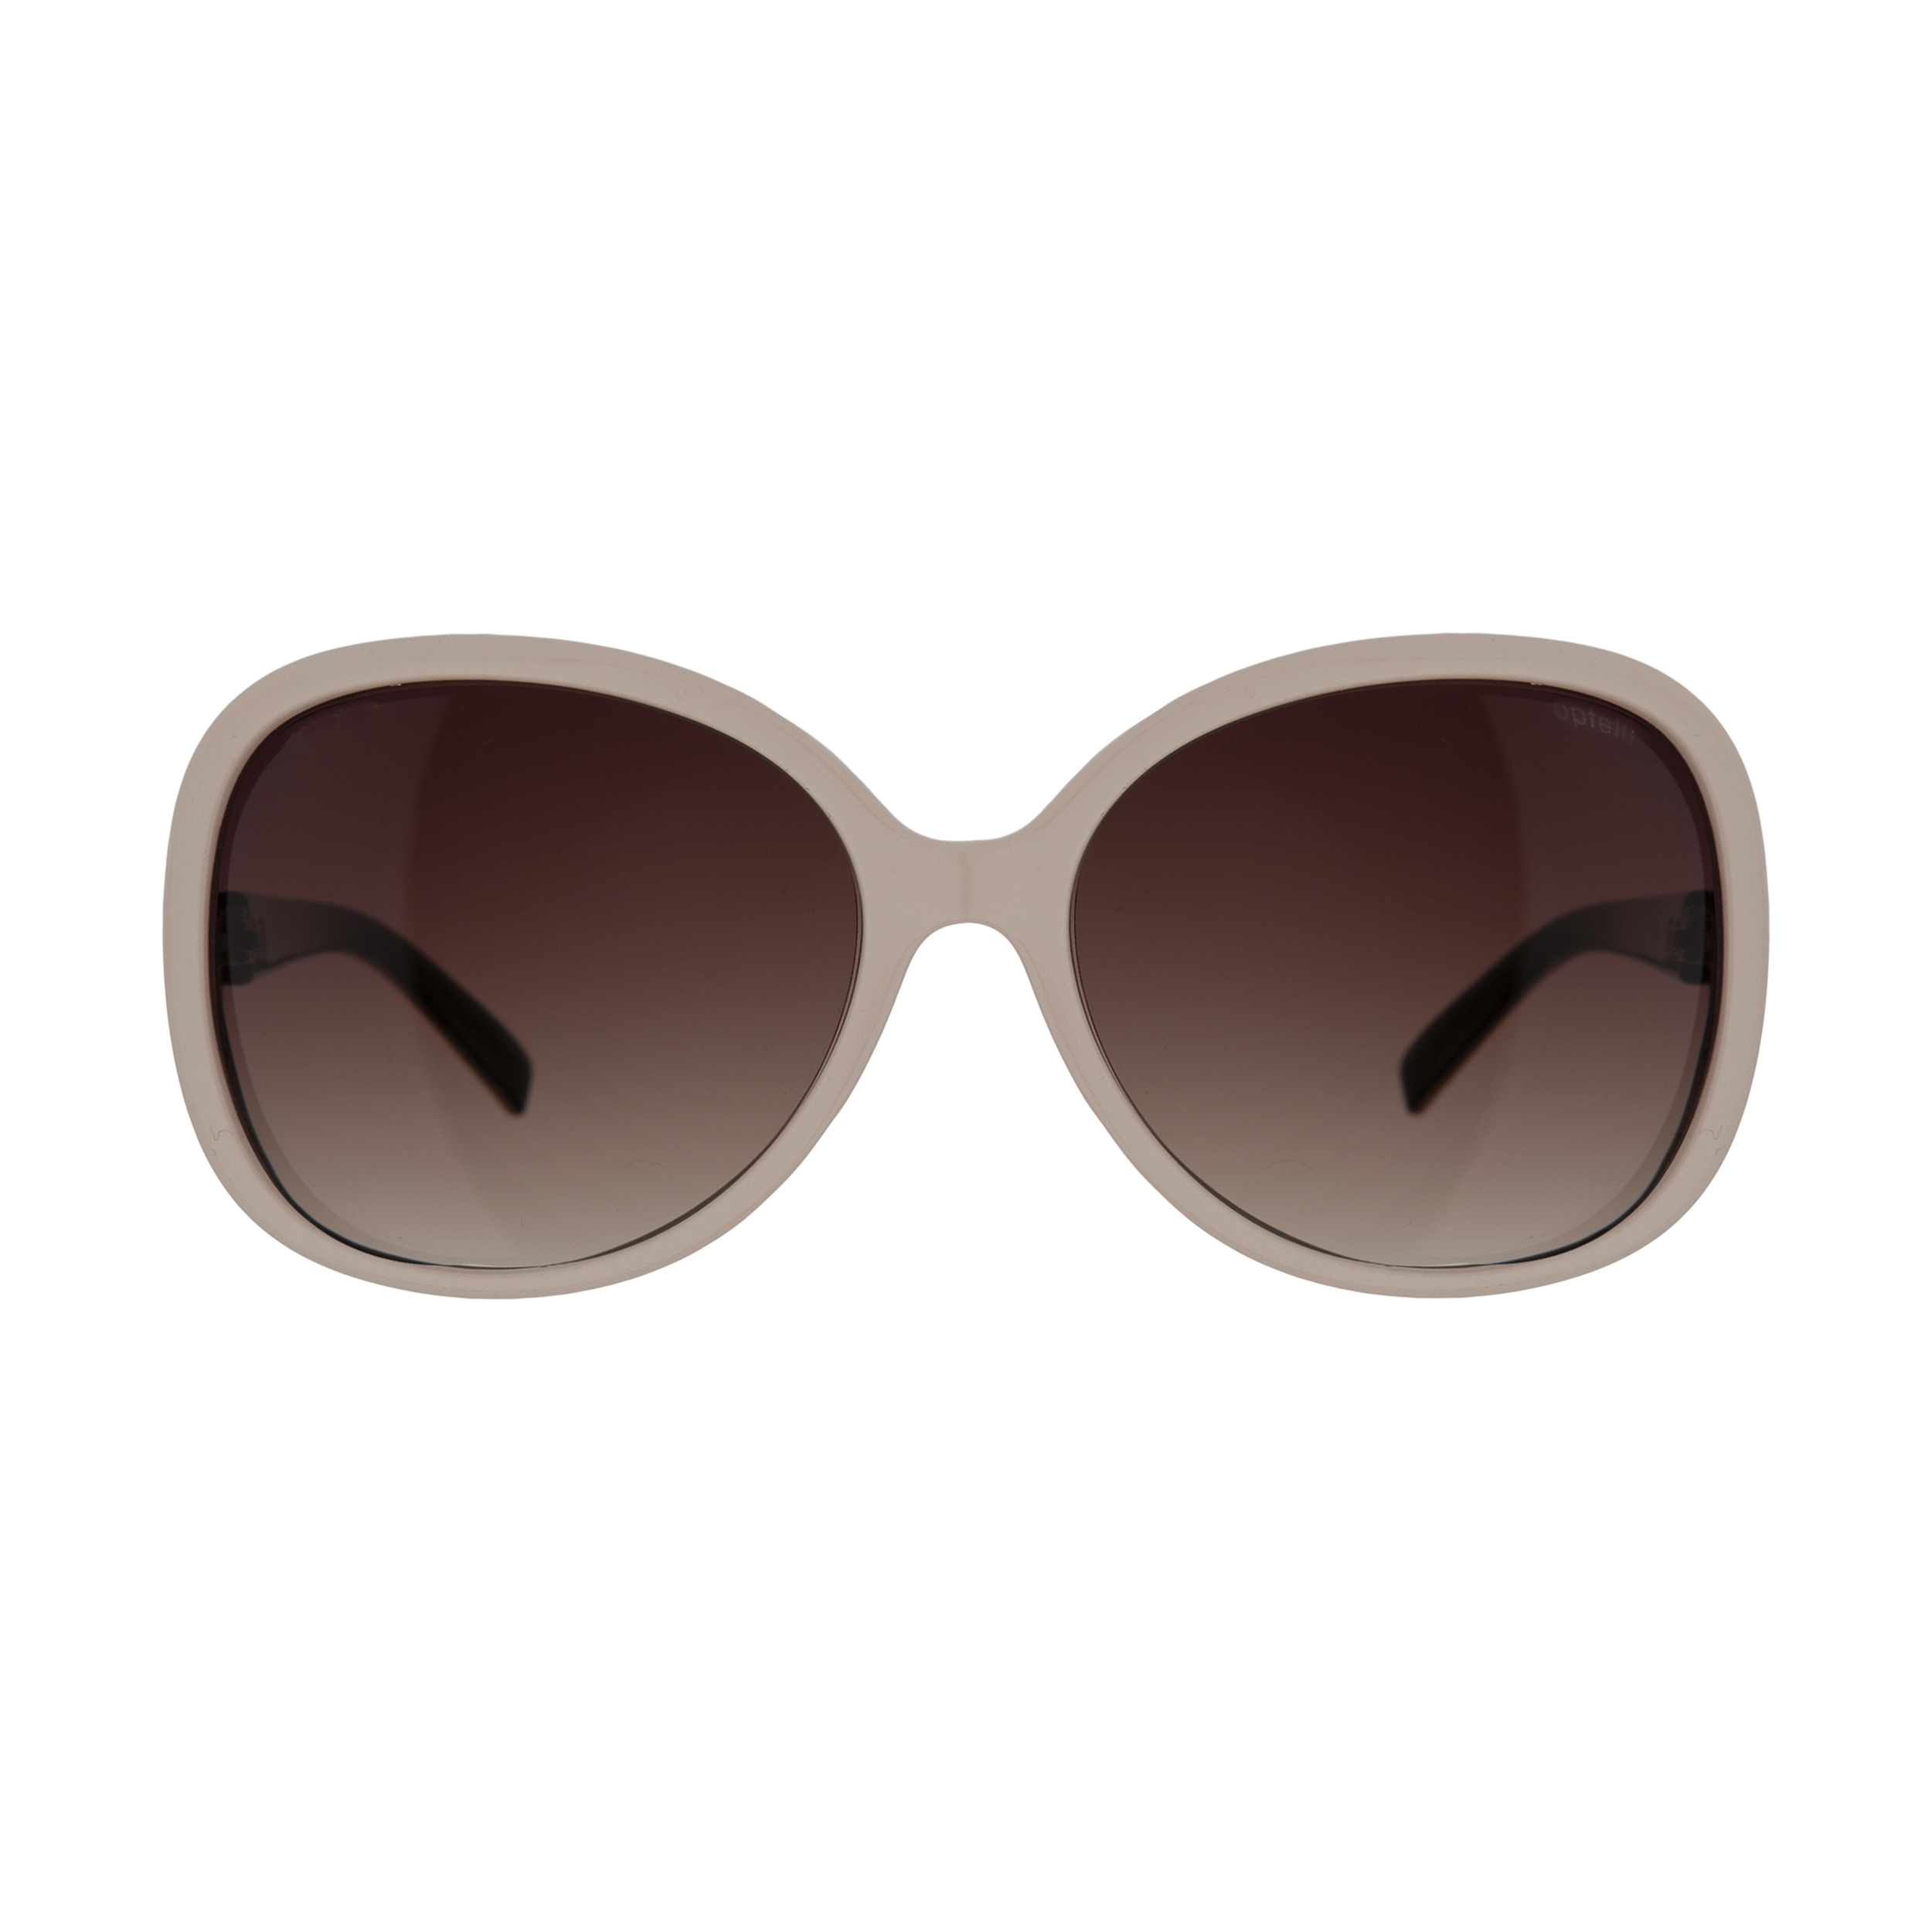 عینک آفتابی زنانه اوپتل مدل 1121 01